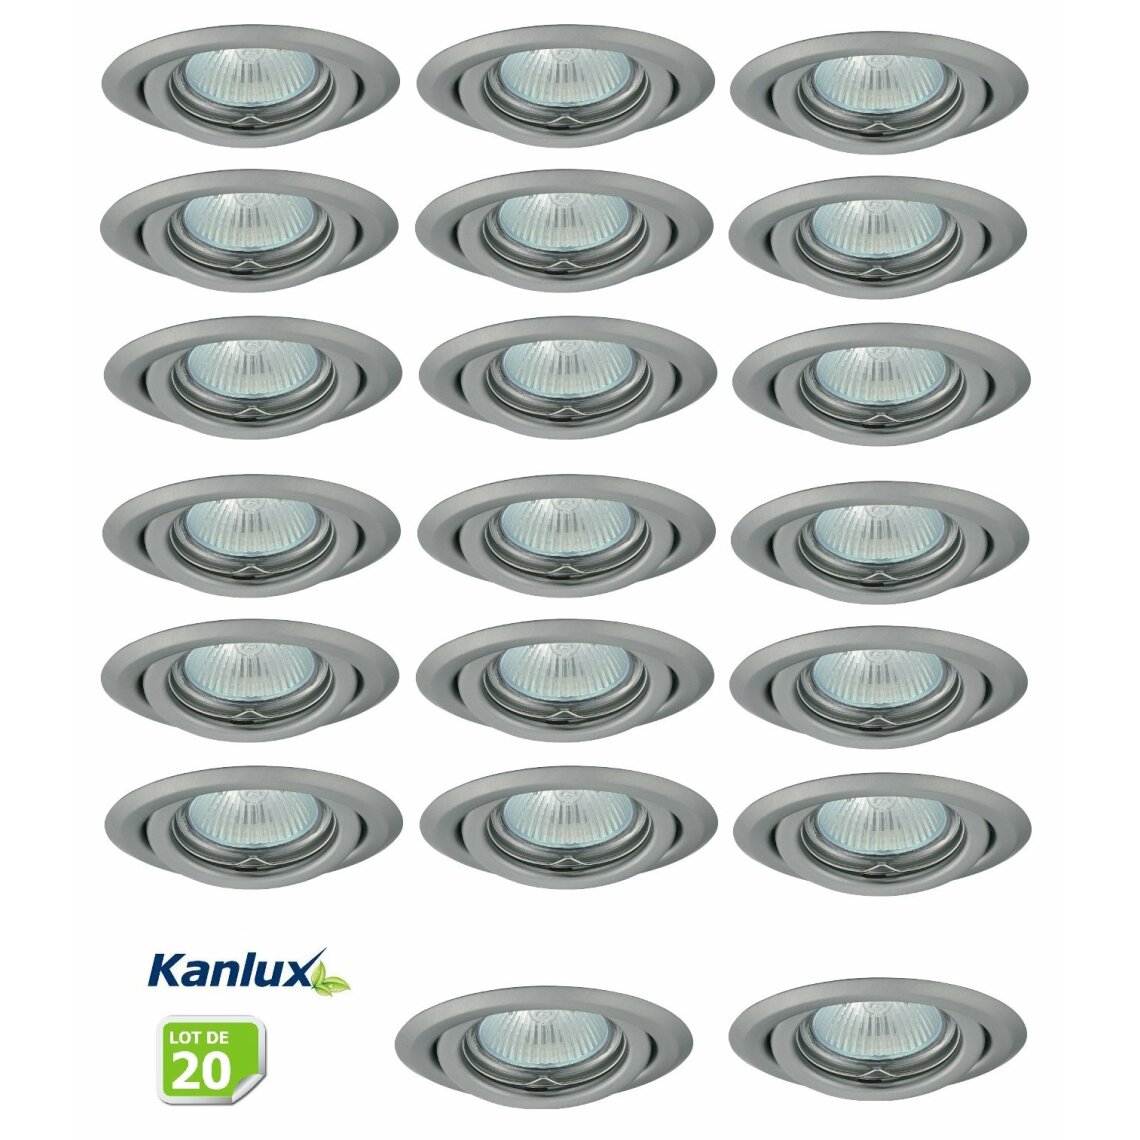 Kanlux - Lot de 20 Fixation de spot encastrable orientable chrome matt D99mm marque Kanlux ref 26798 - Boîtes d'encastrement